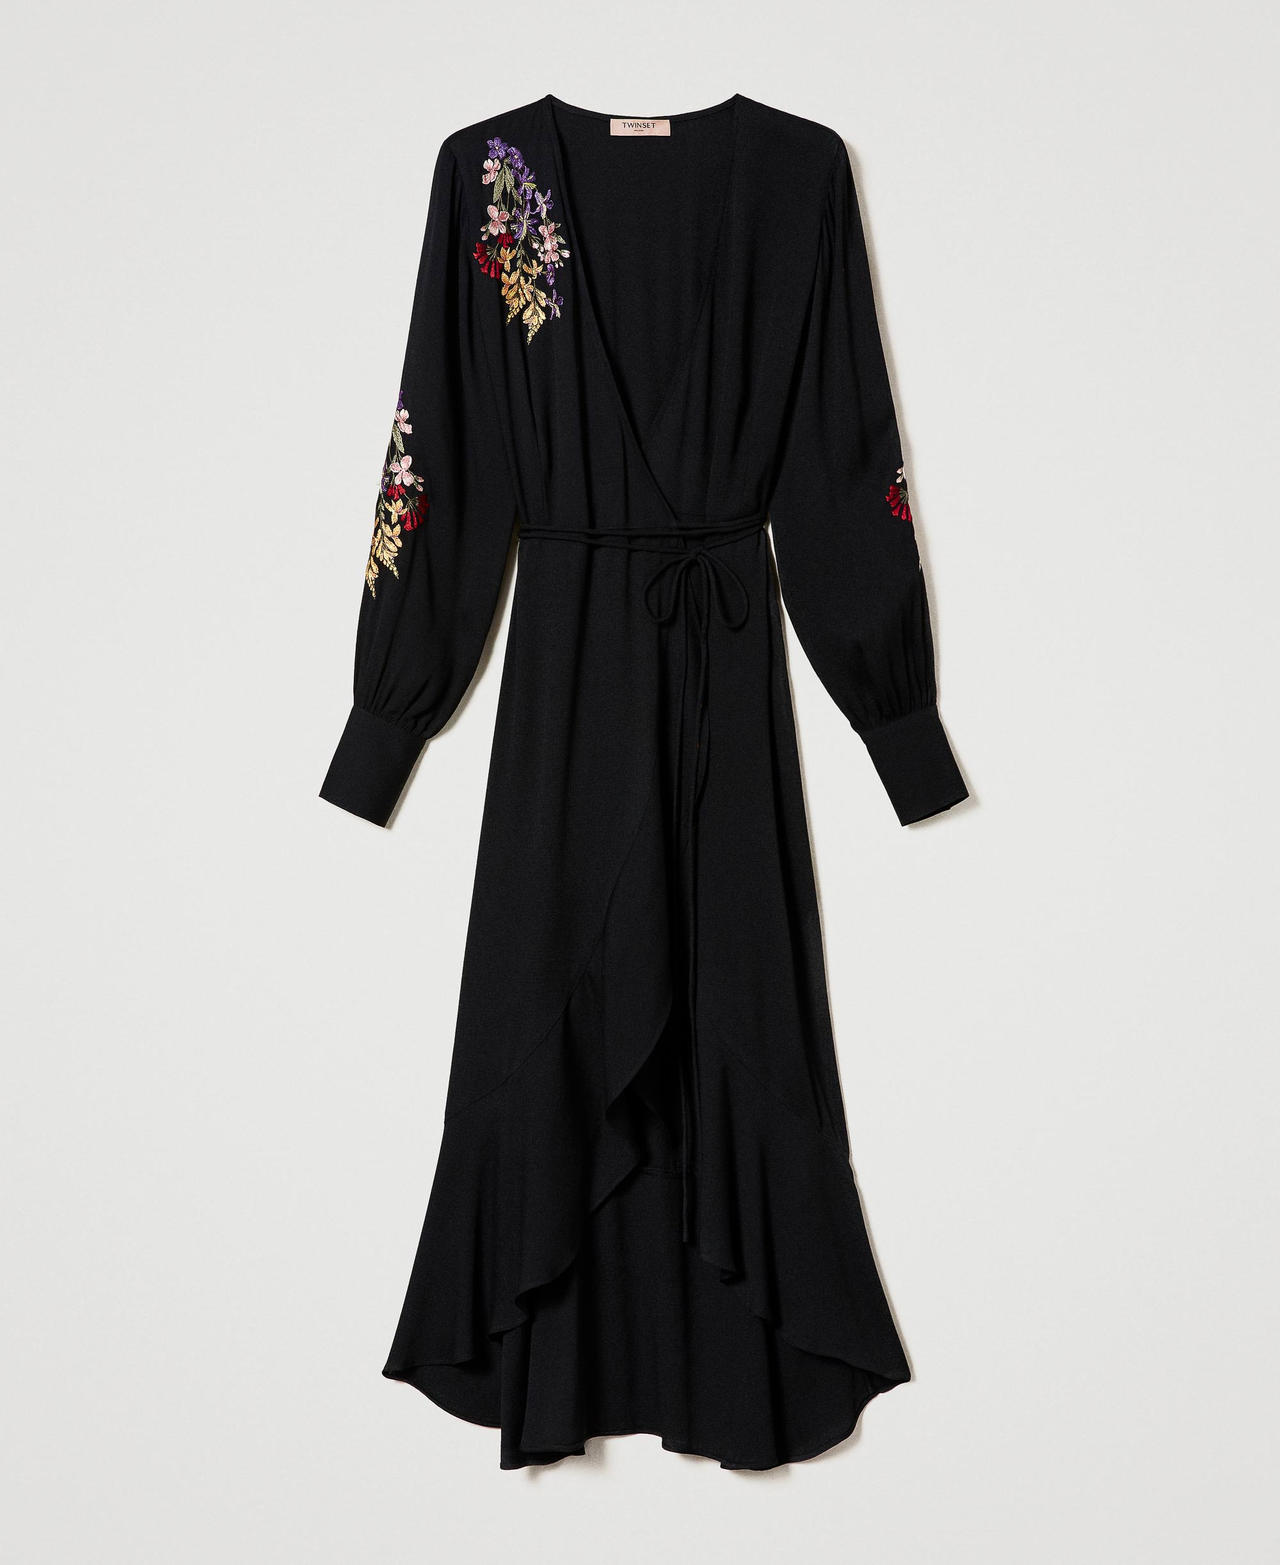 Robe longue portefeuille avec broderie Noir/Broderie Multicolore Femme 232TT2390-0S